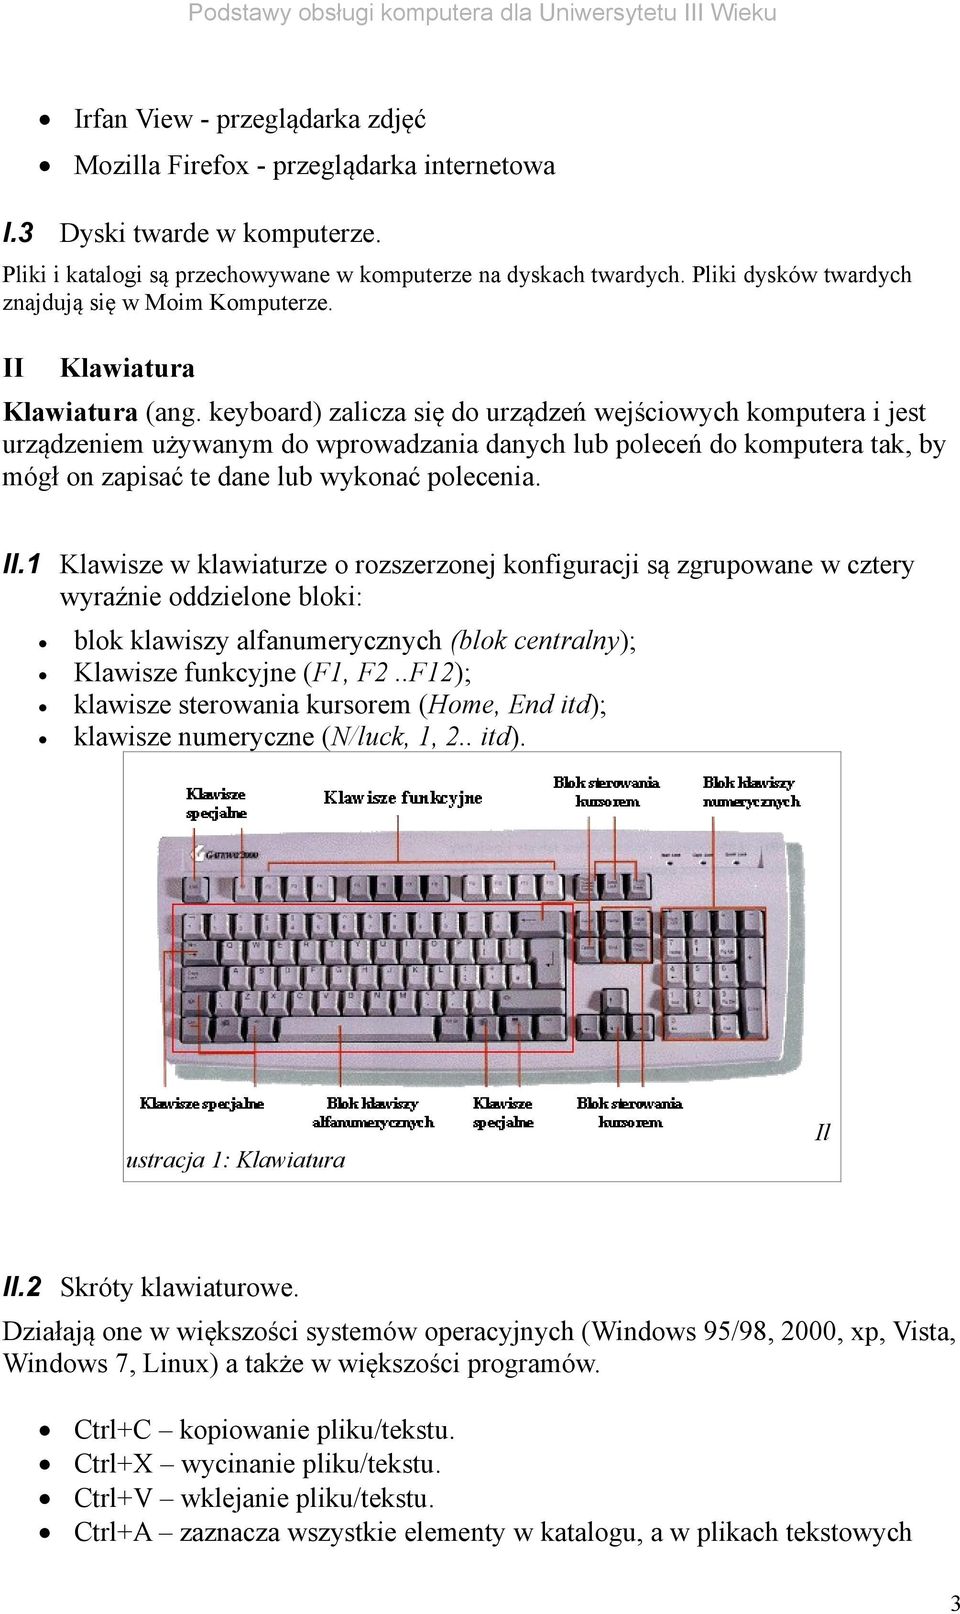 keyboard) zalicza się do urządzeń wejściowych komputera i jest urządzeniem używanym do wprowadzania danych lub poleceń do komputera tak, by mógł on zapisać te dane lub wykonać polecenia. II.